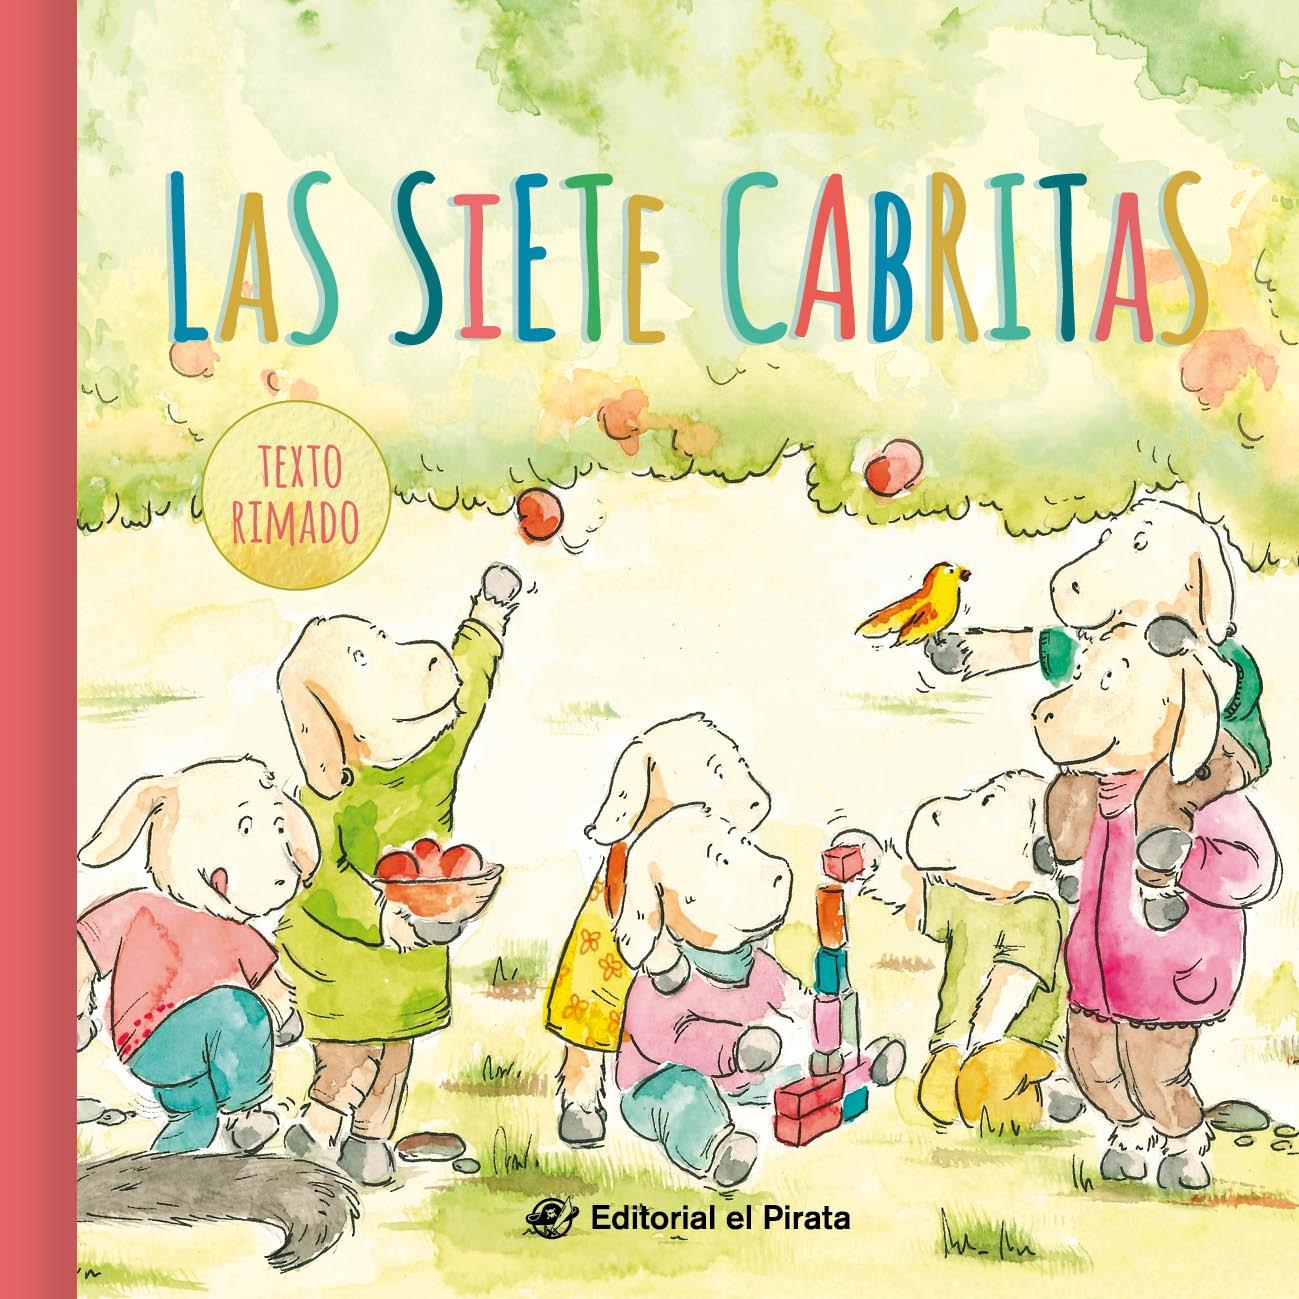 Las siete cabritas - Cuentos clásicos "Cuentos tradicionales: Libro infantil para niños de 2 a 6 años: Con text"